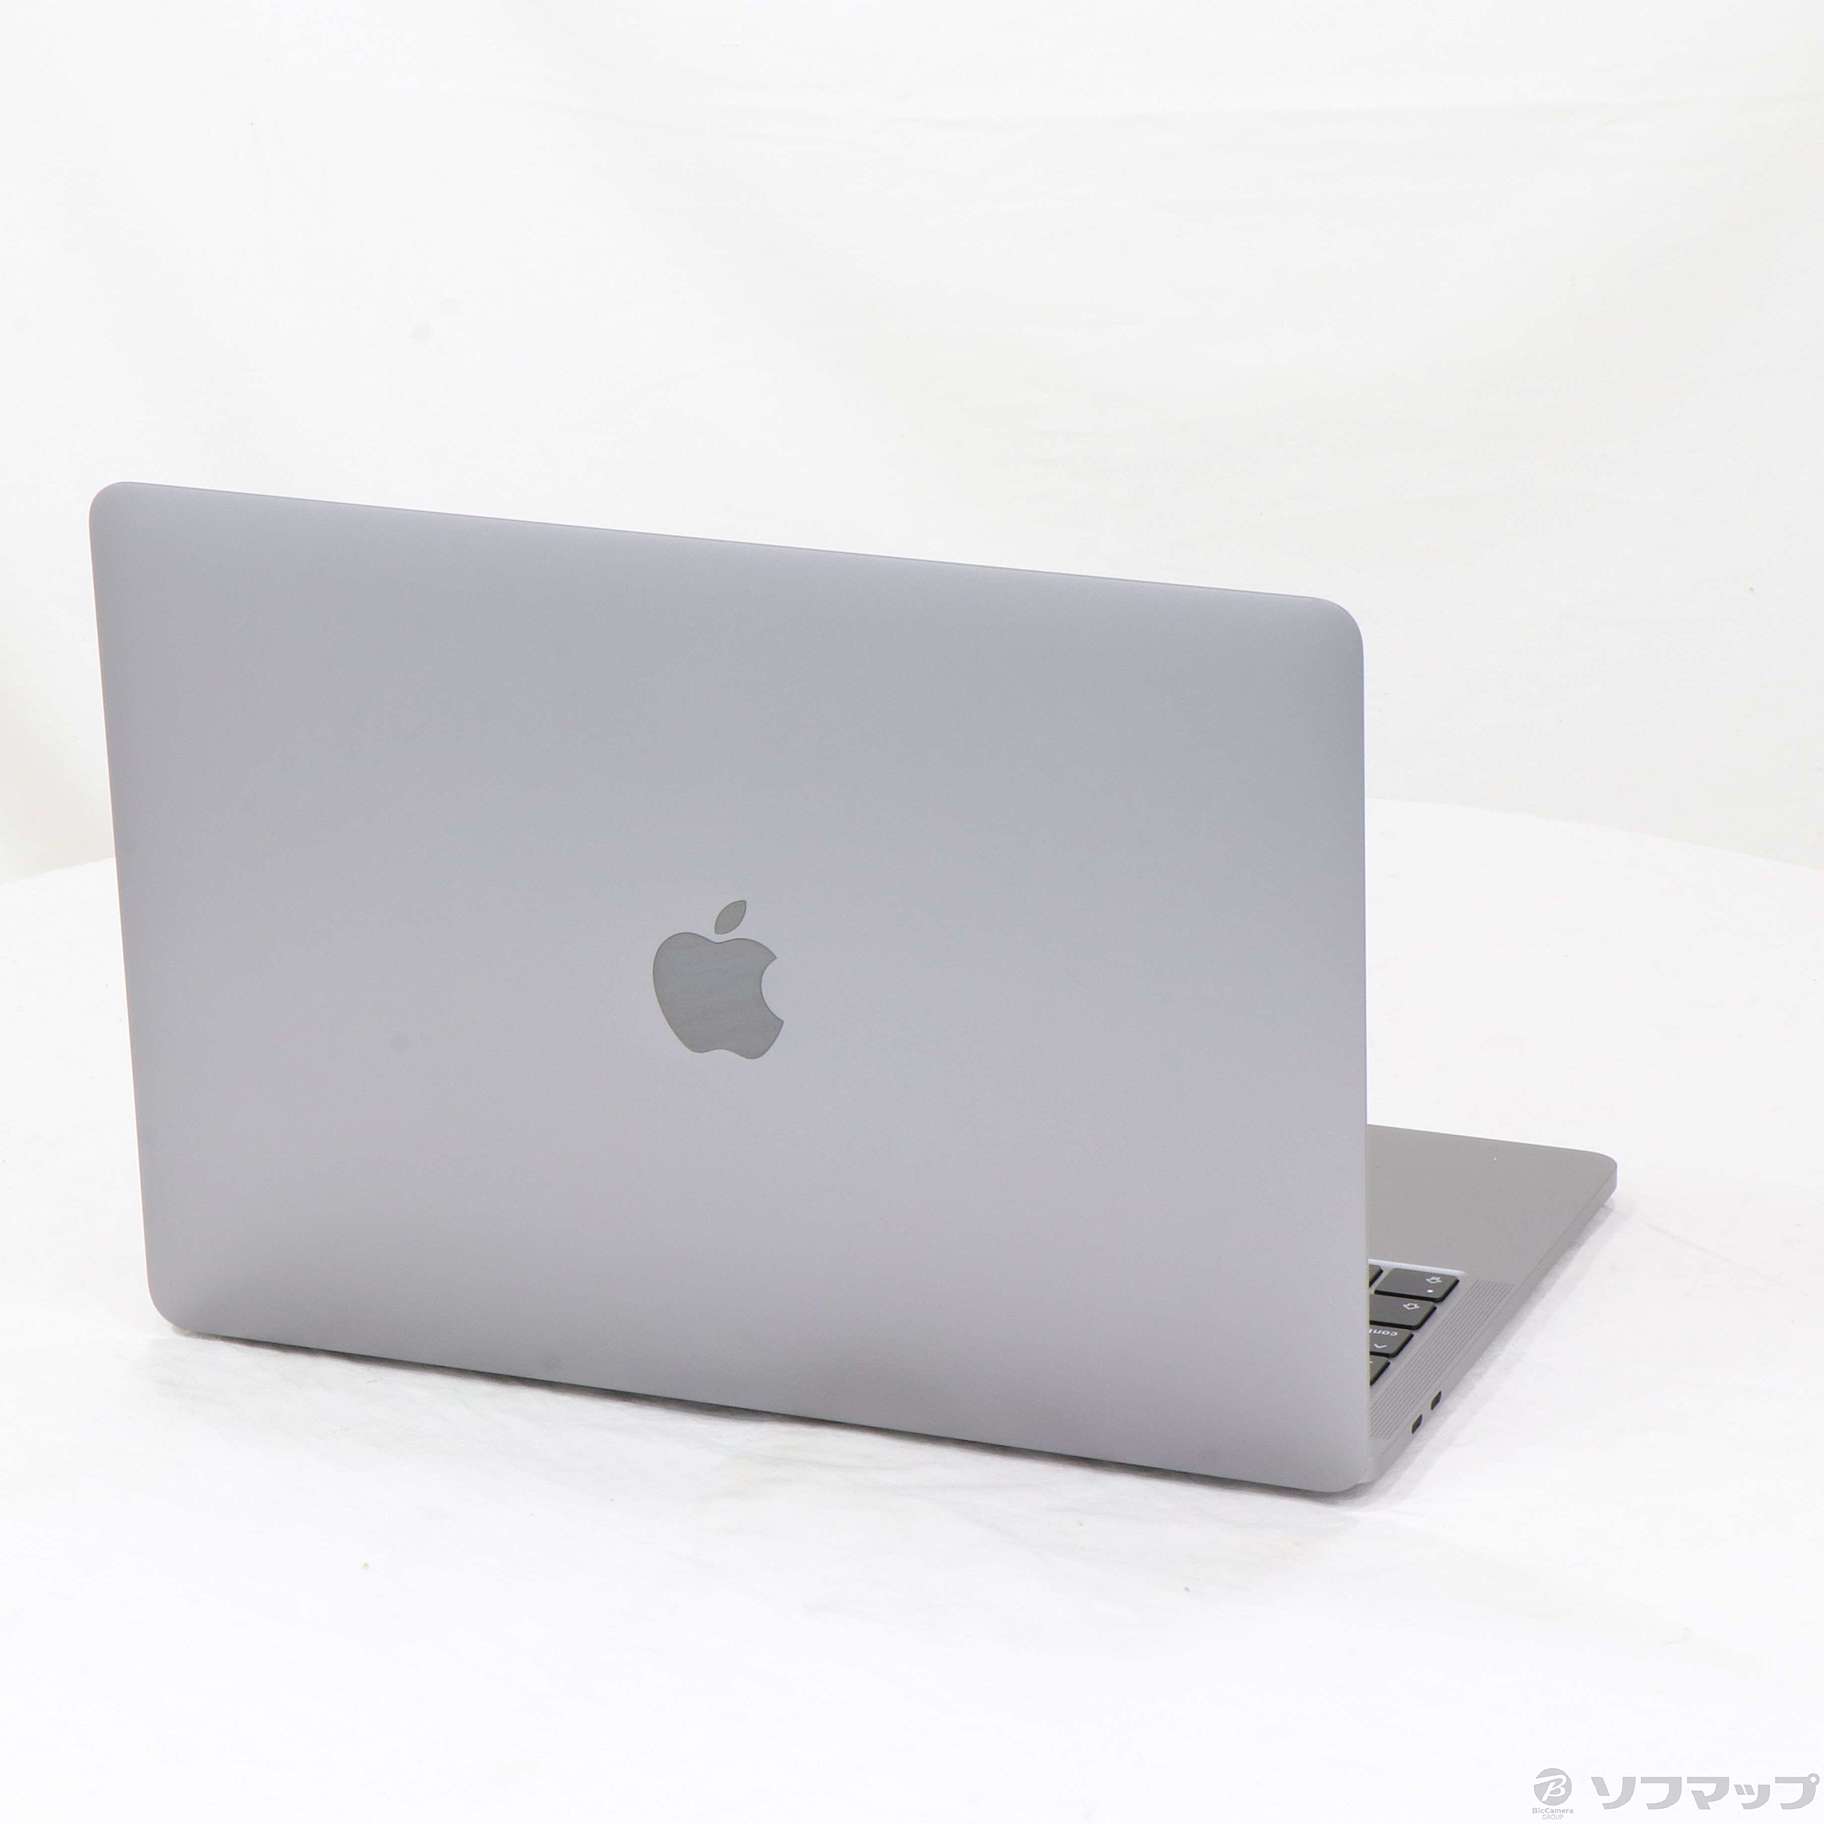 21,160円MacBookPro13/2016/16GB/SSD256GB/US